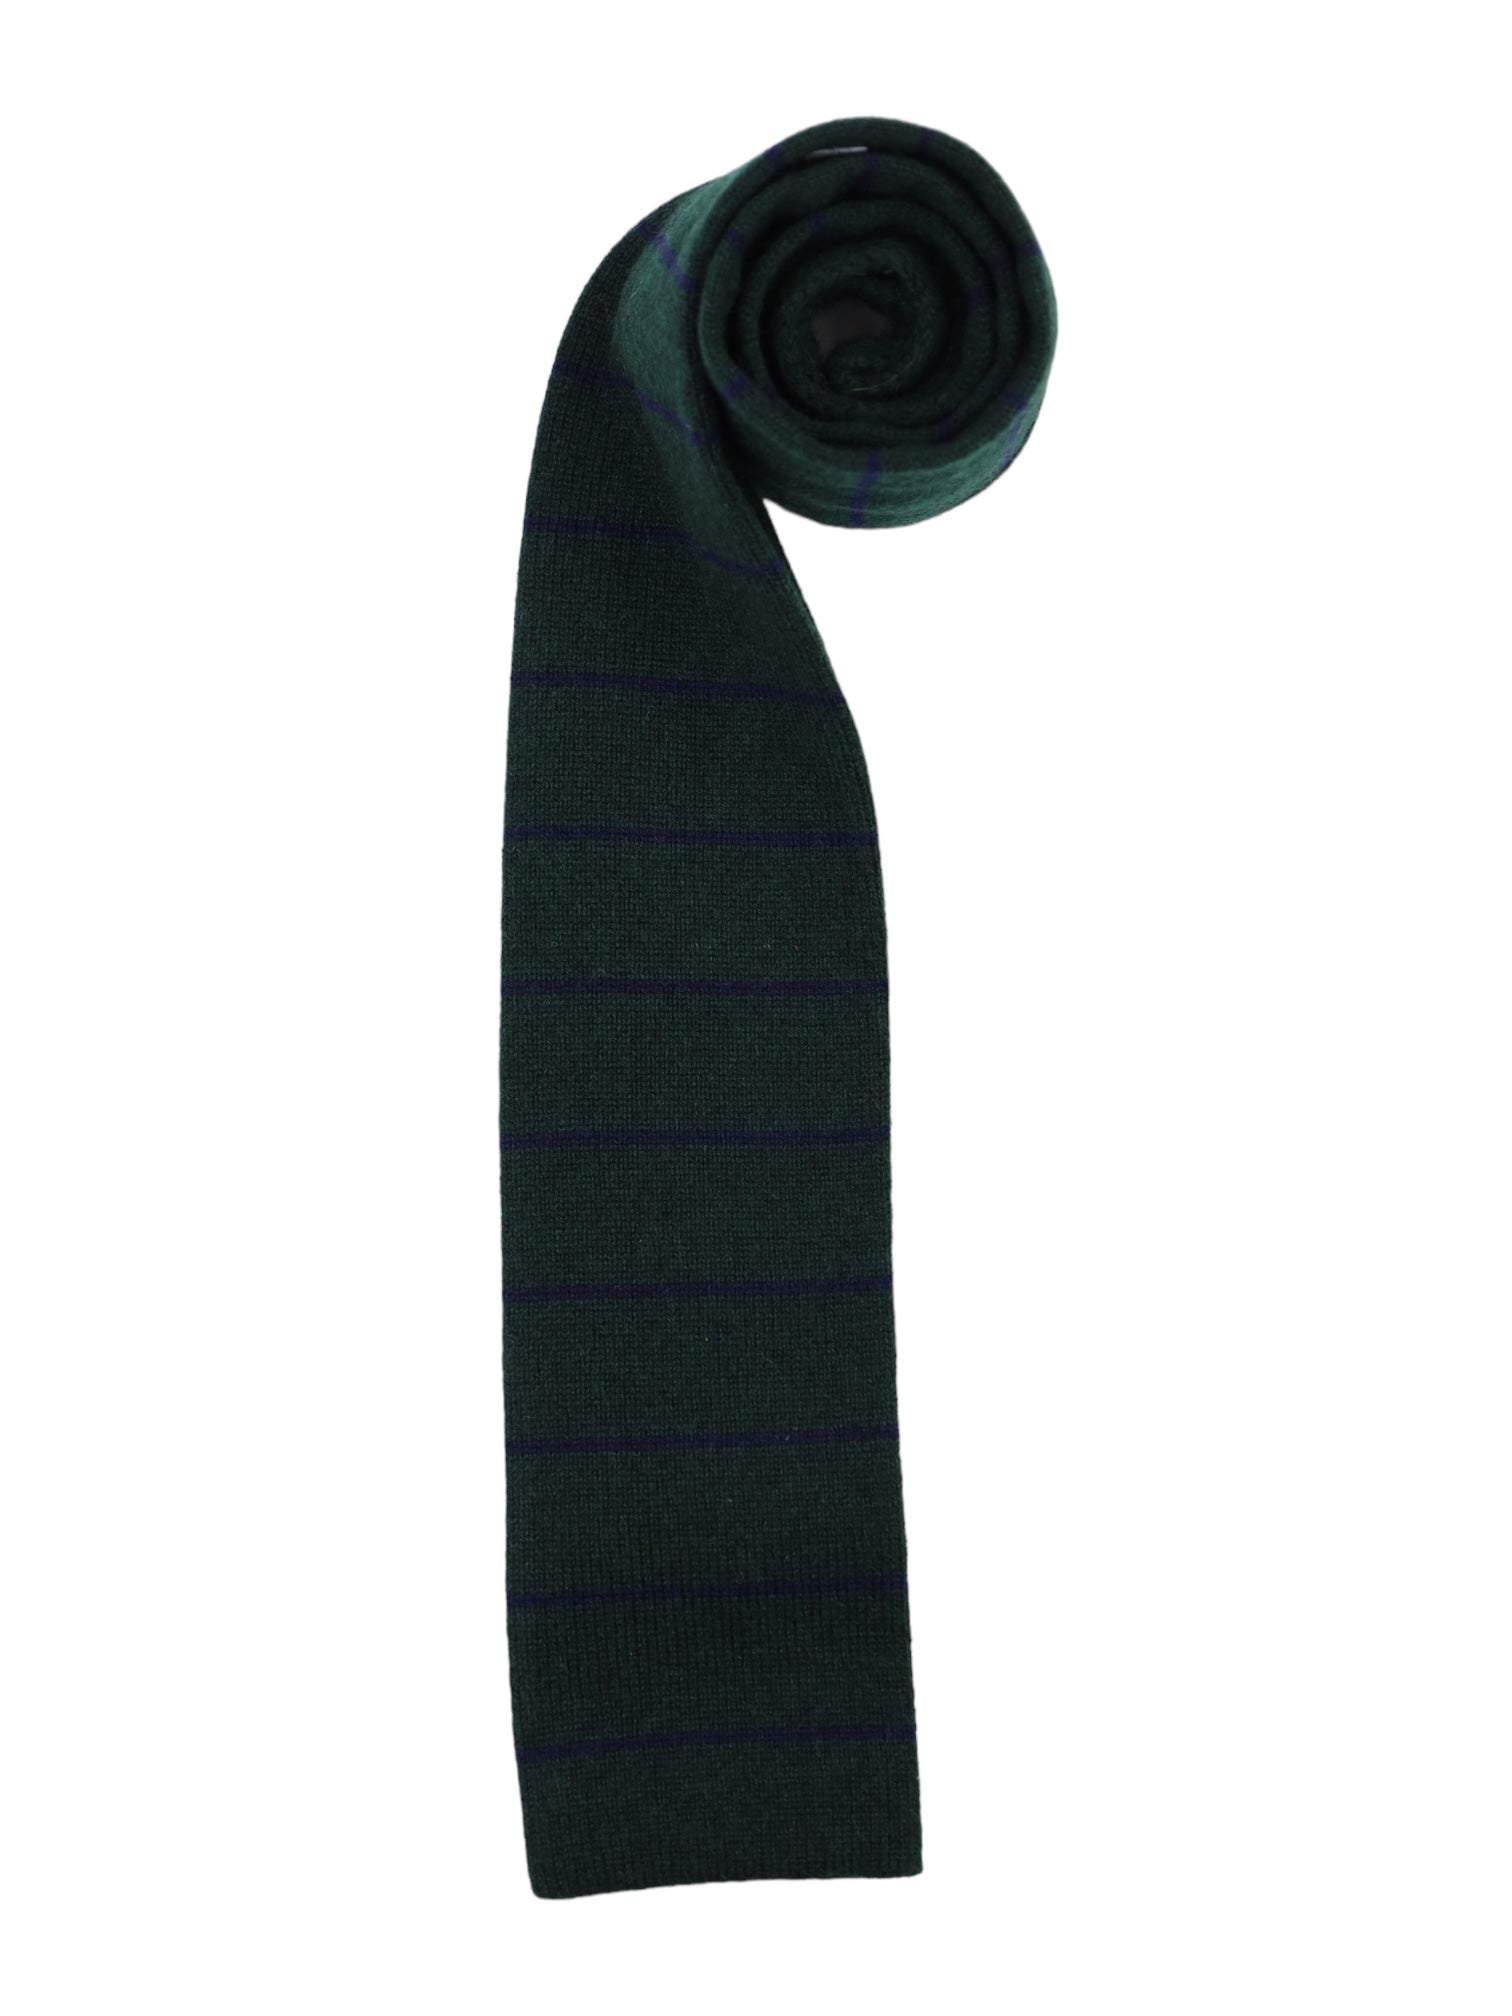 Mattabisch Forest Green Knitted Cashmere Tie